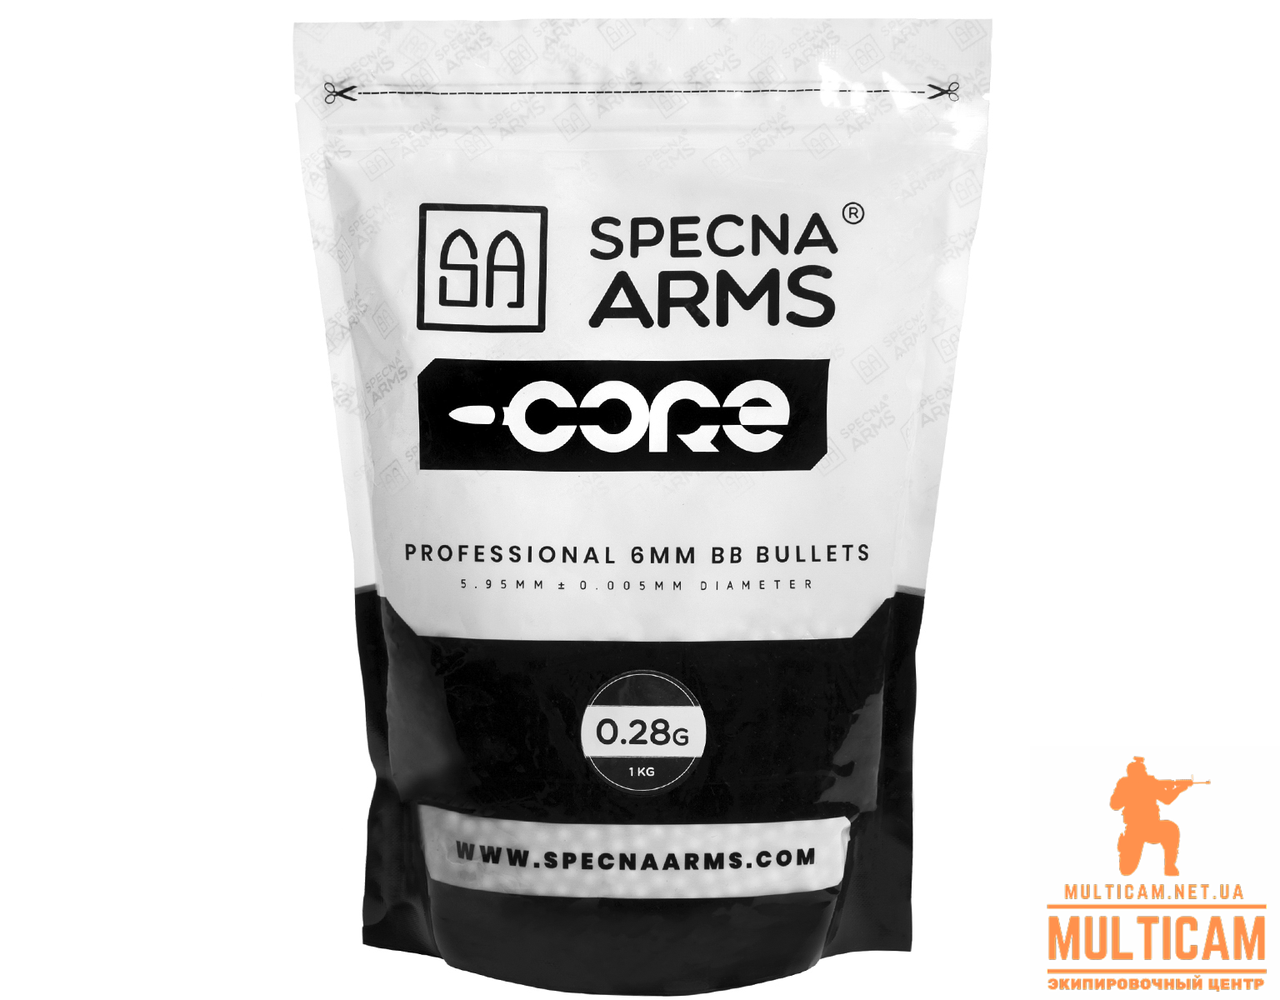 Кулі страйкбольні Specna® Arms CORE™ 0.28 g - 1 кг - 3570 шт - White